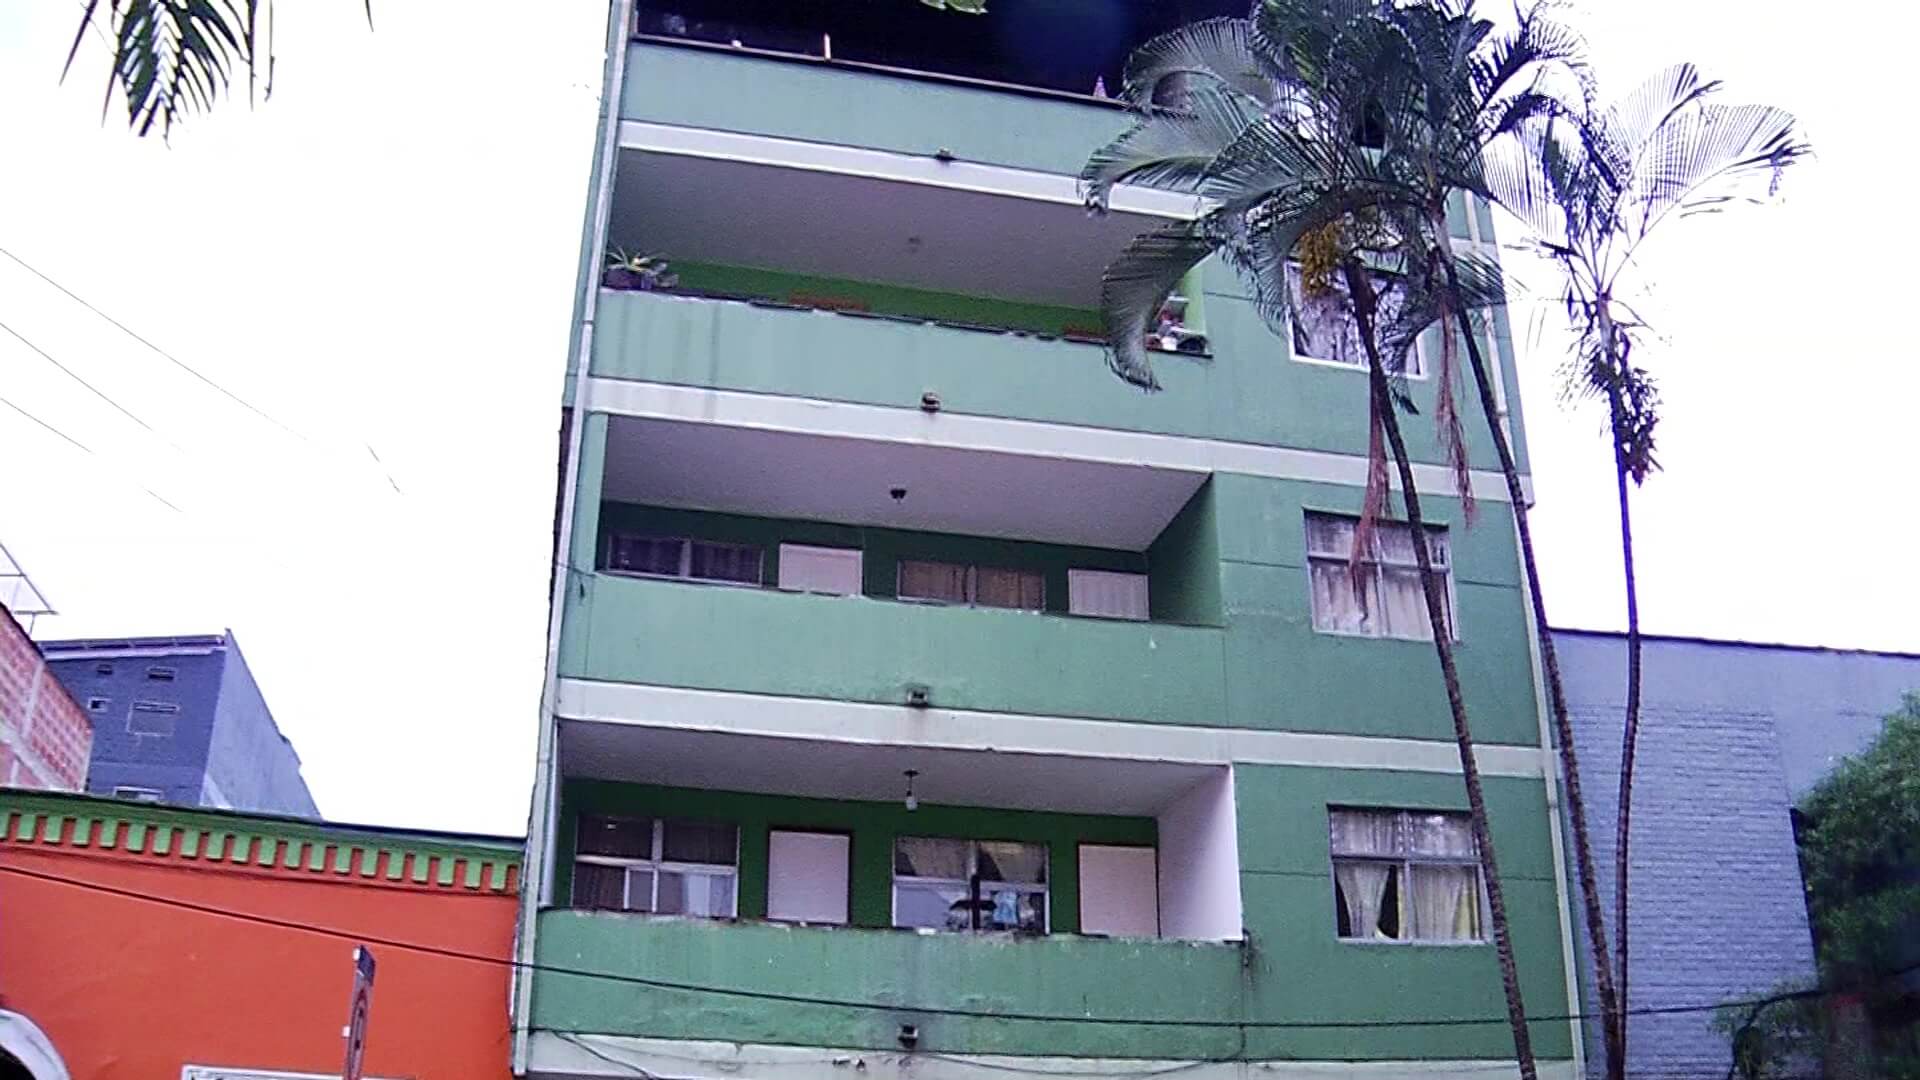 Edificio de cinco pisos en riesgo de colapso